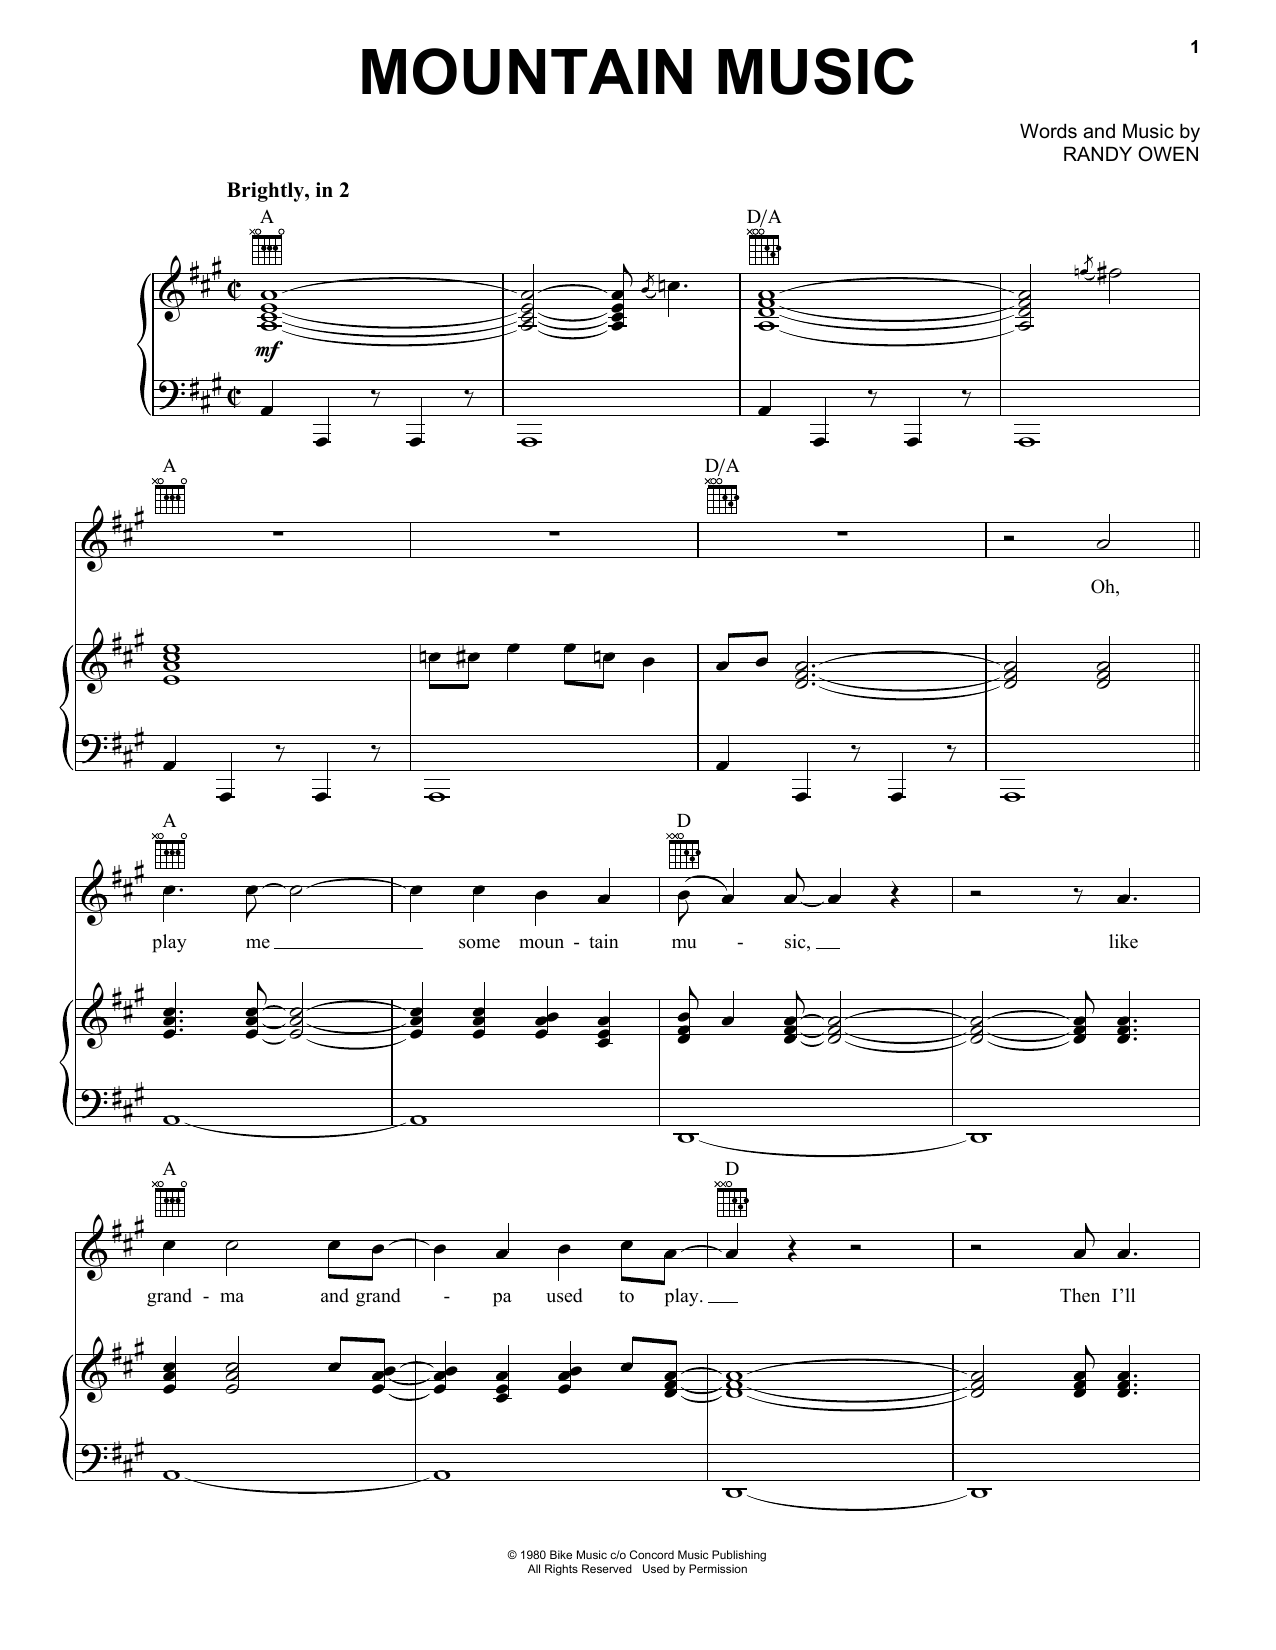 Alabama Mountain Music Sheet Music Notes & Chords for Lyrics & Chords - Download or Print PDF